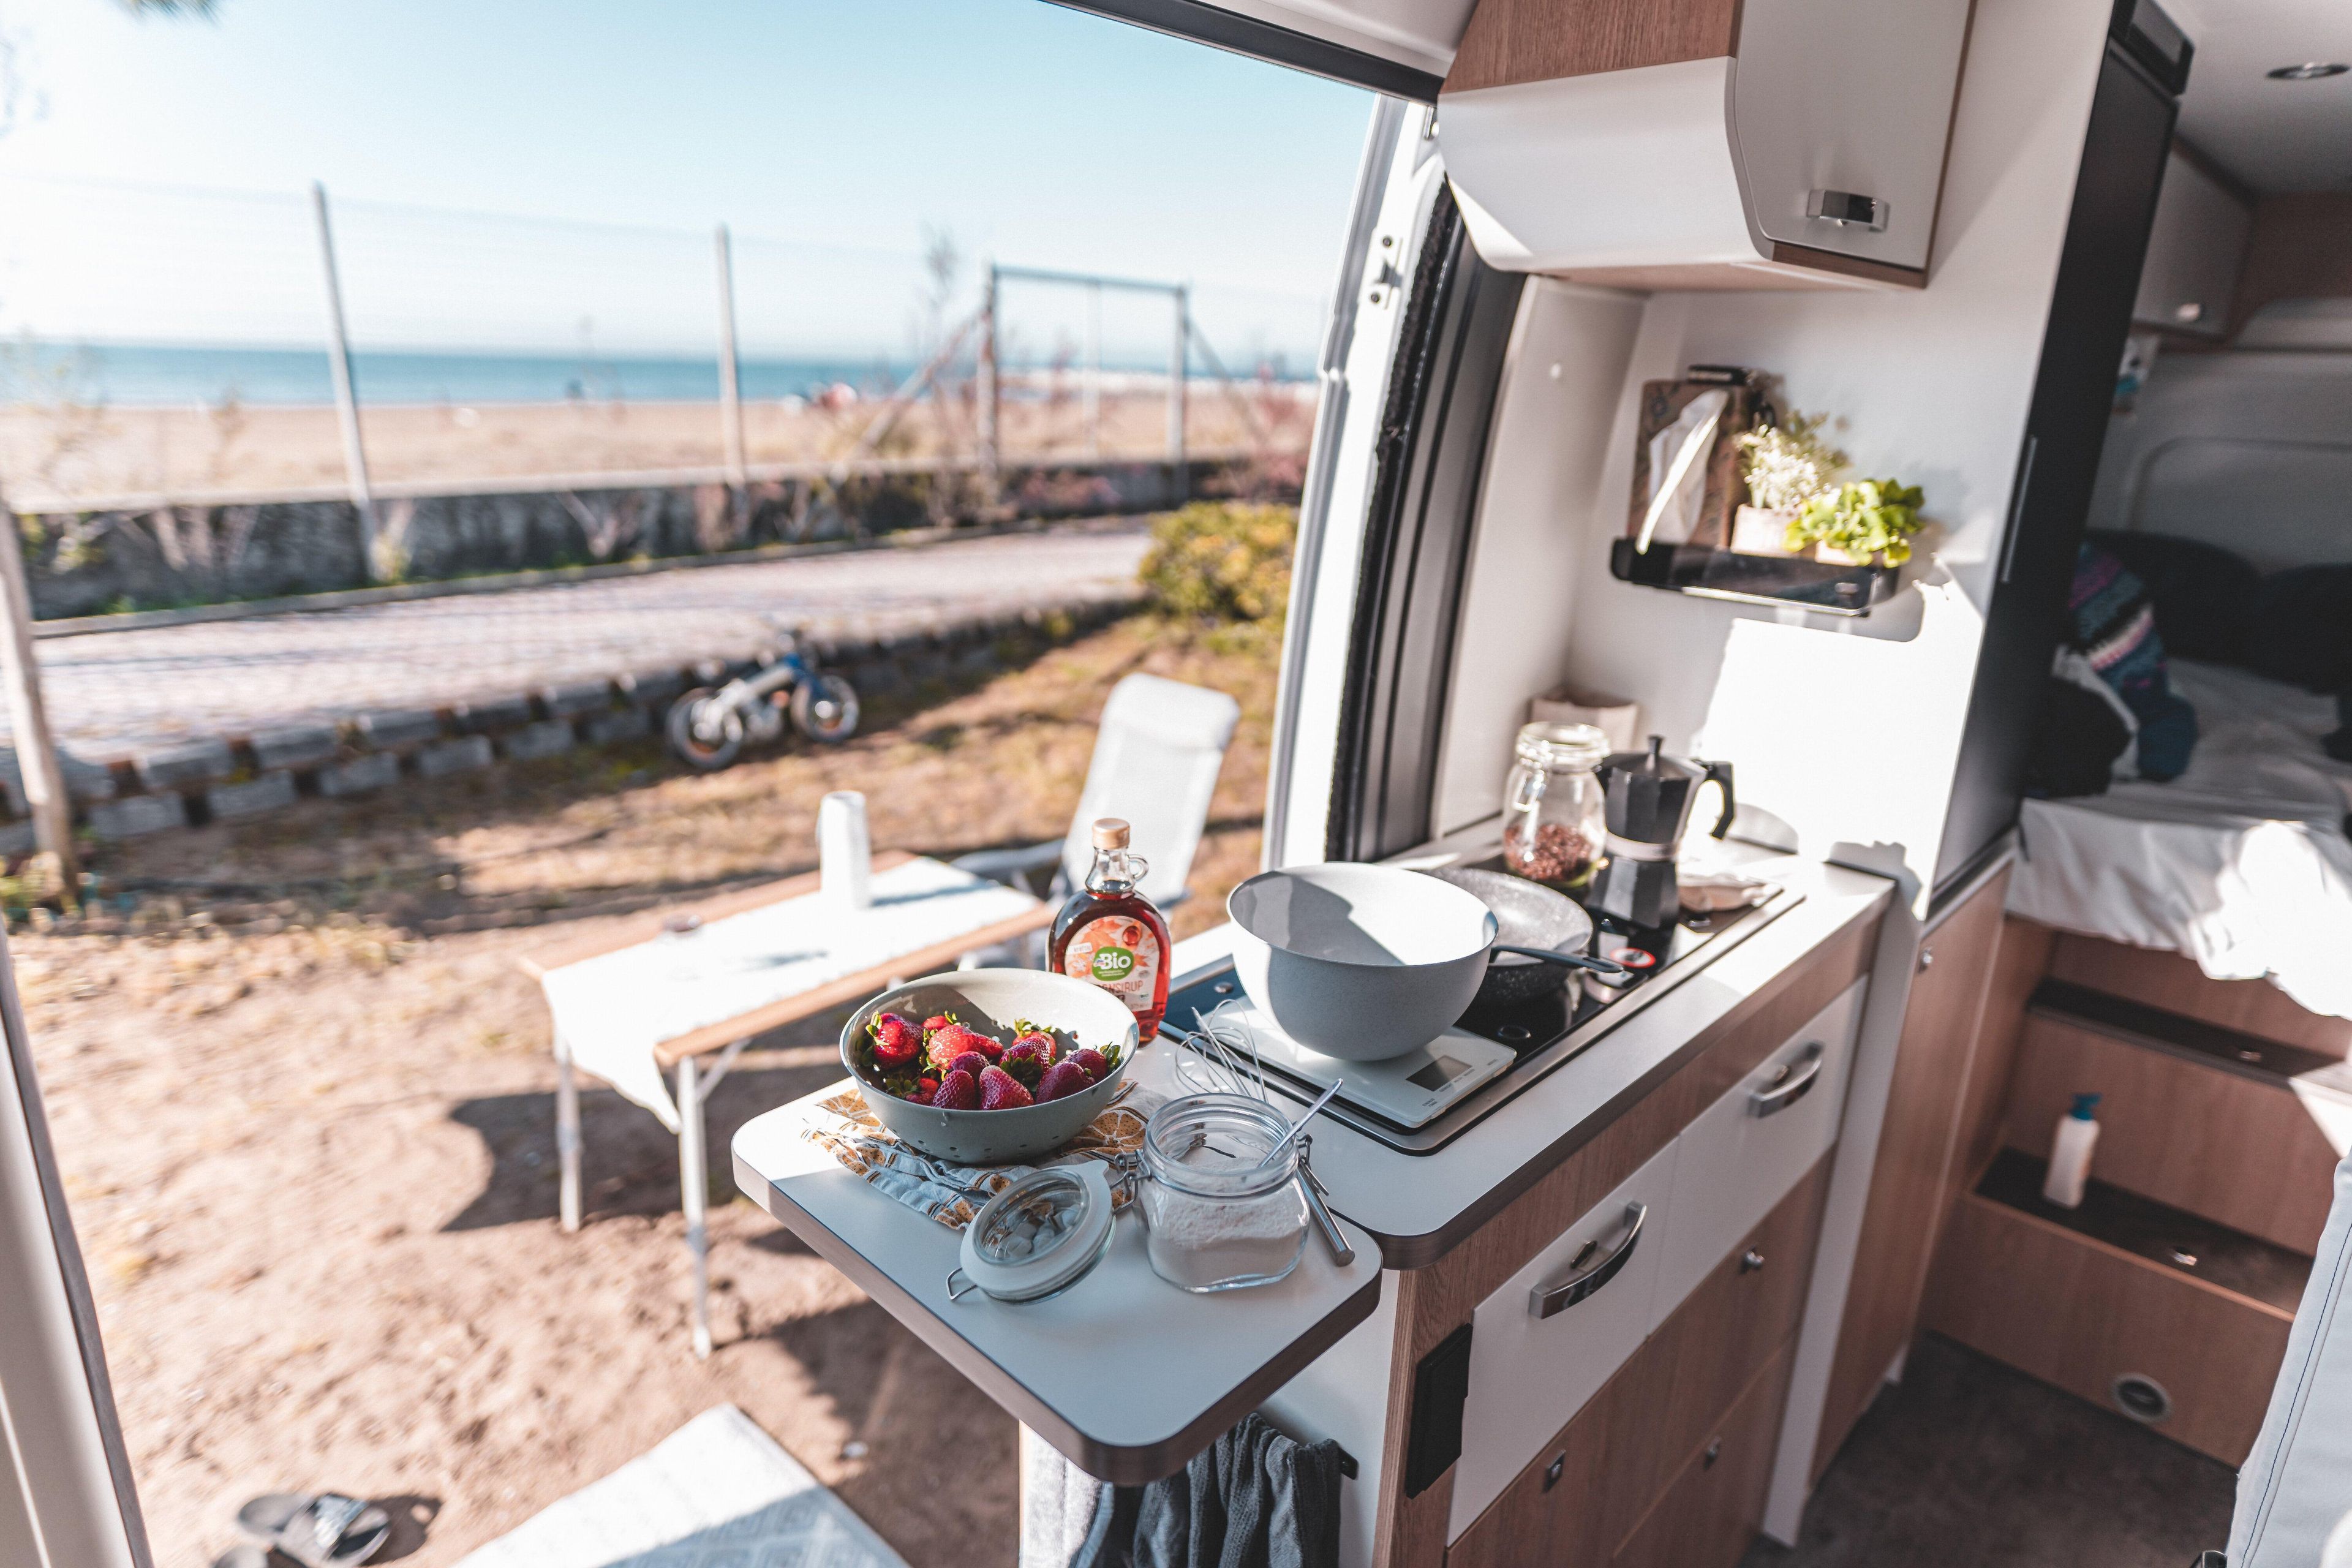 Frühstück in der Camper Küche mit Ausblick aufs Meer.